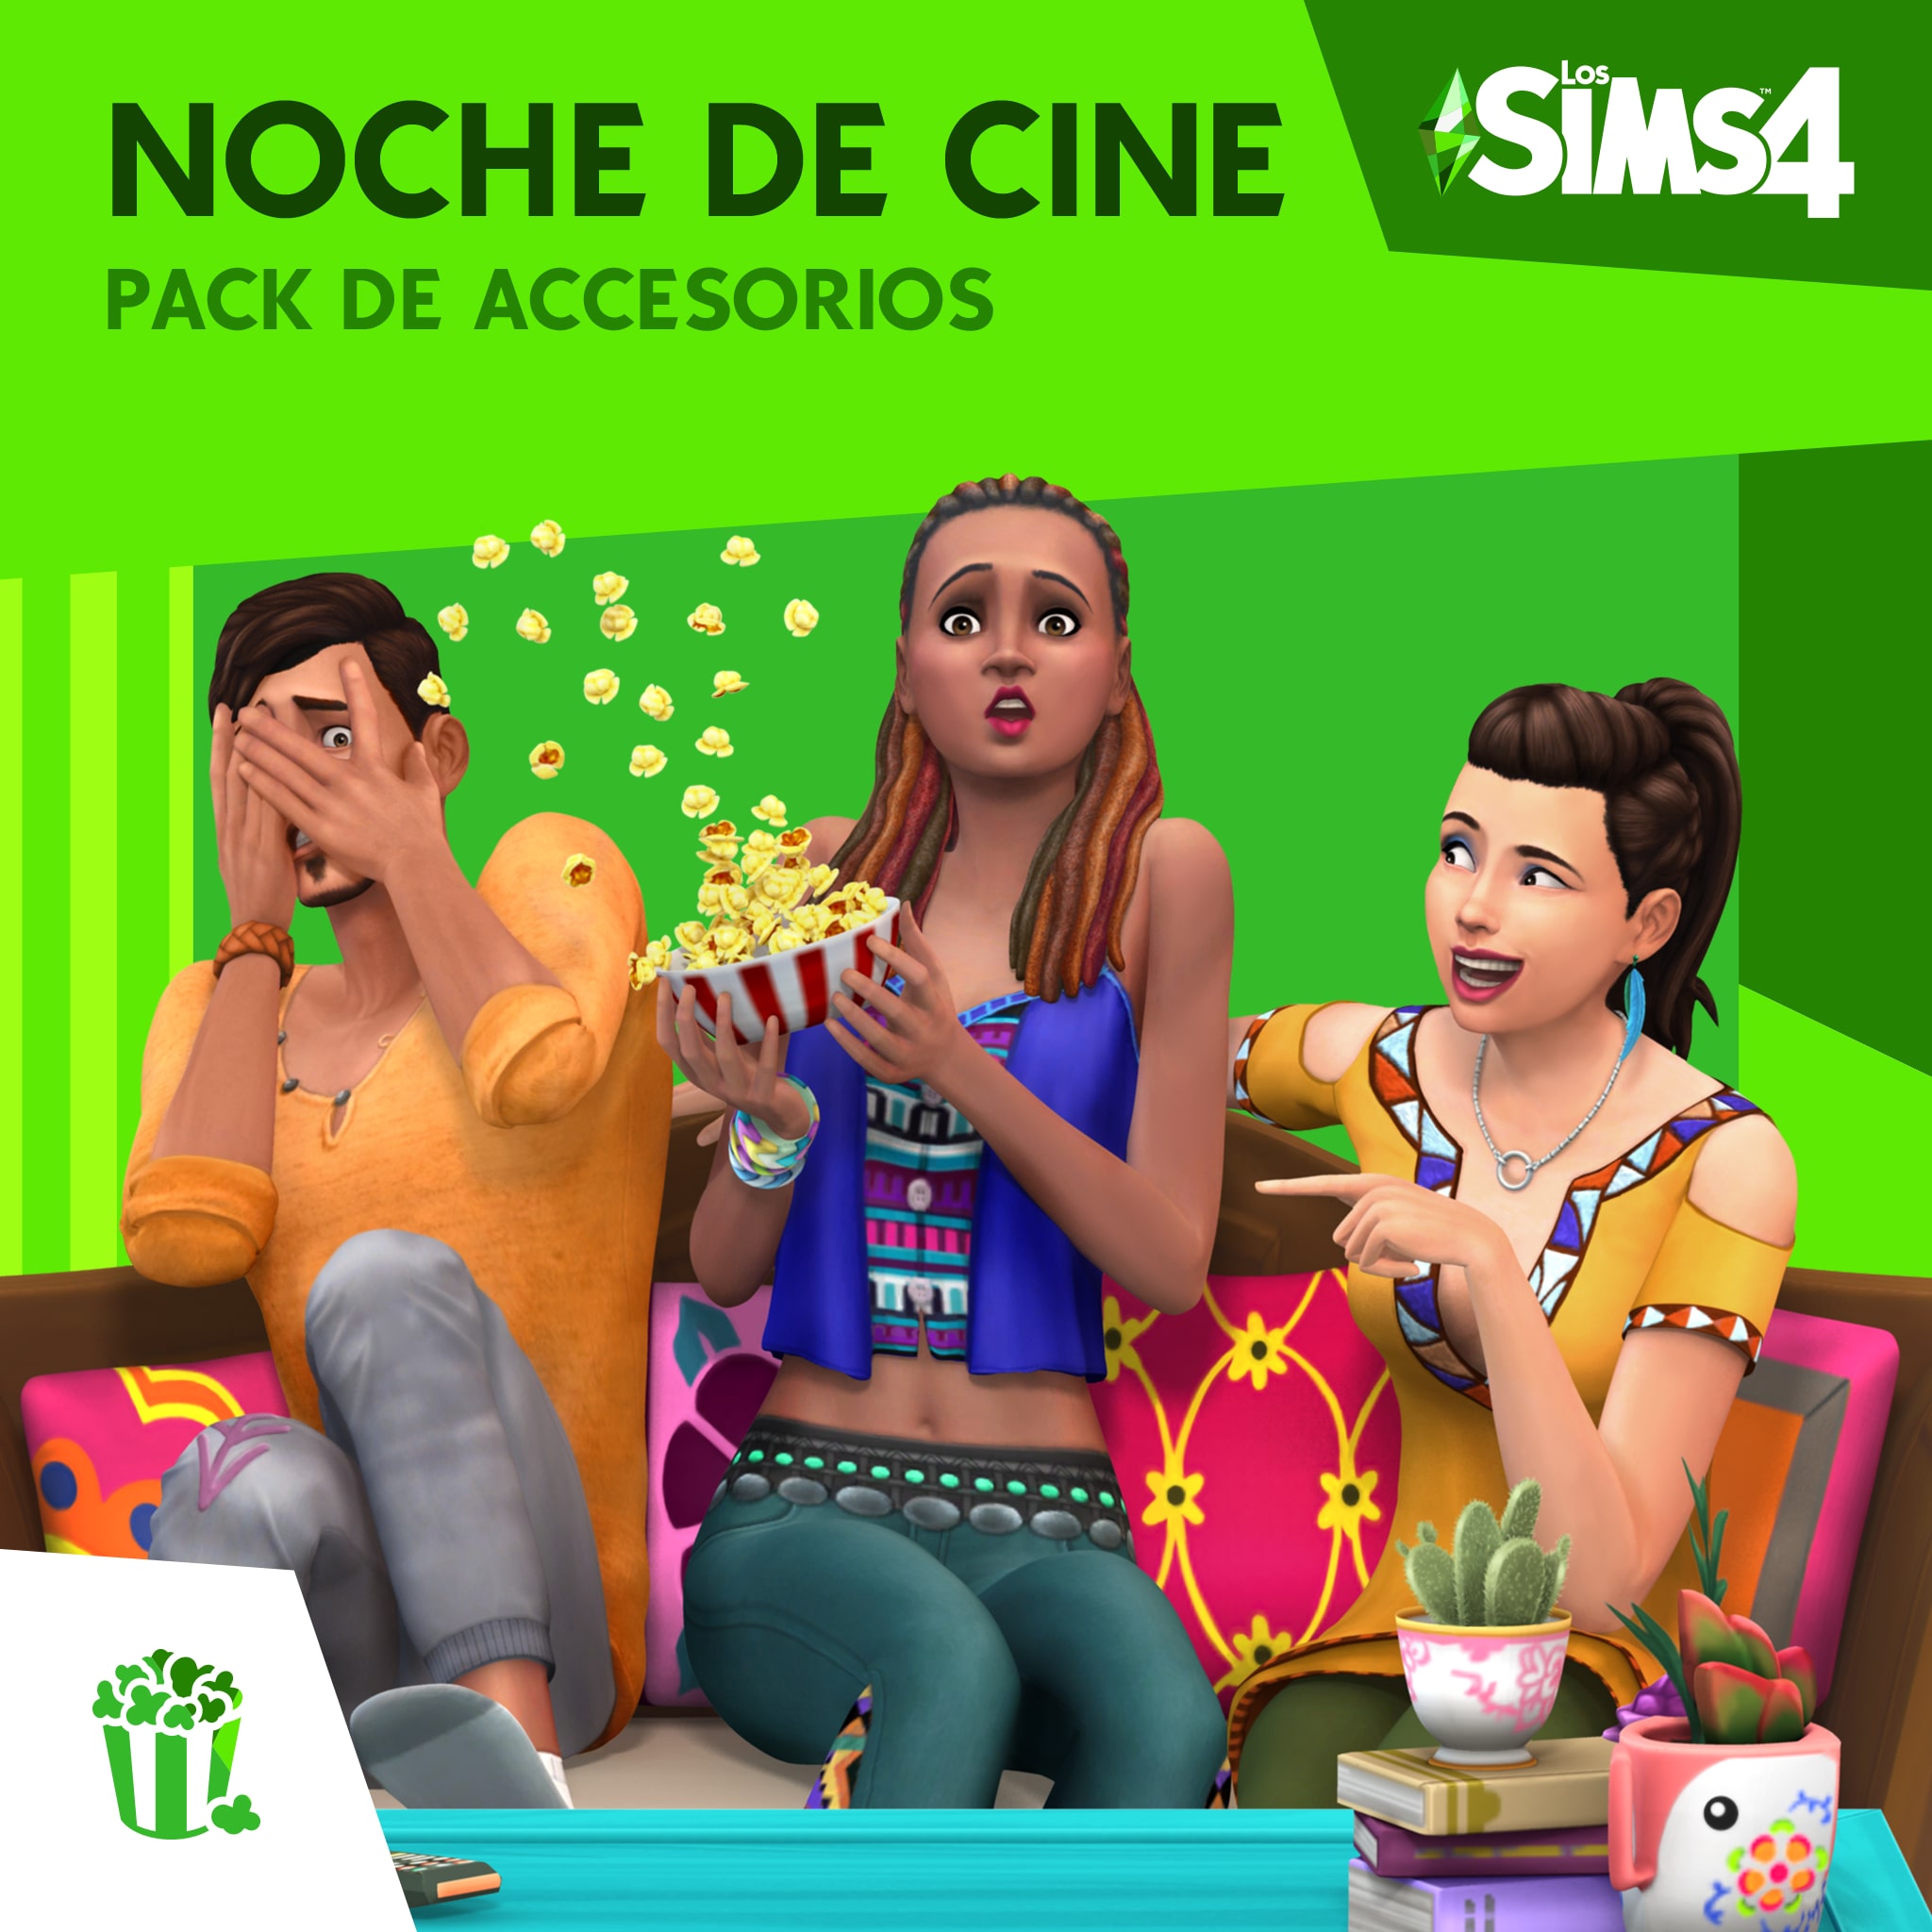  Los Sims™ 4 Noche de Cine Pack de Accesorios